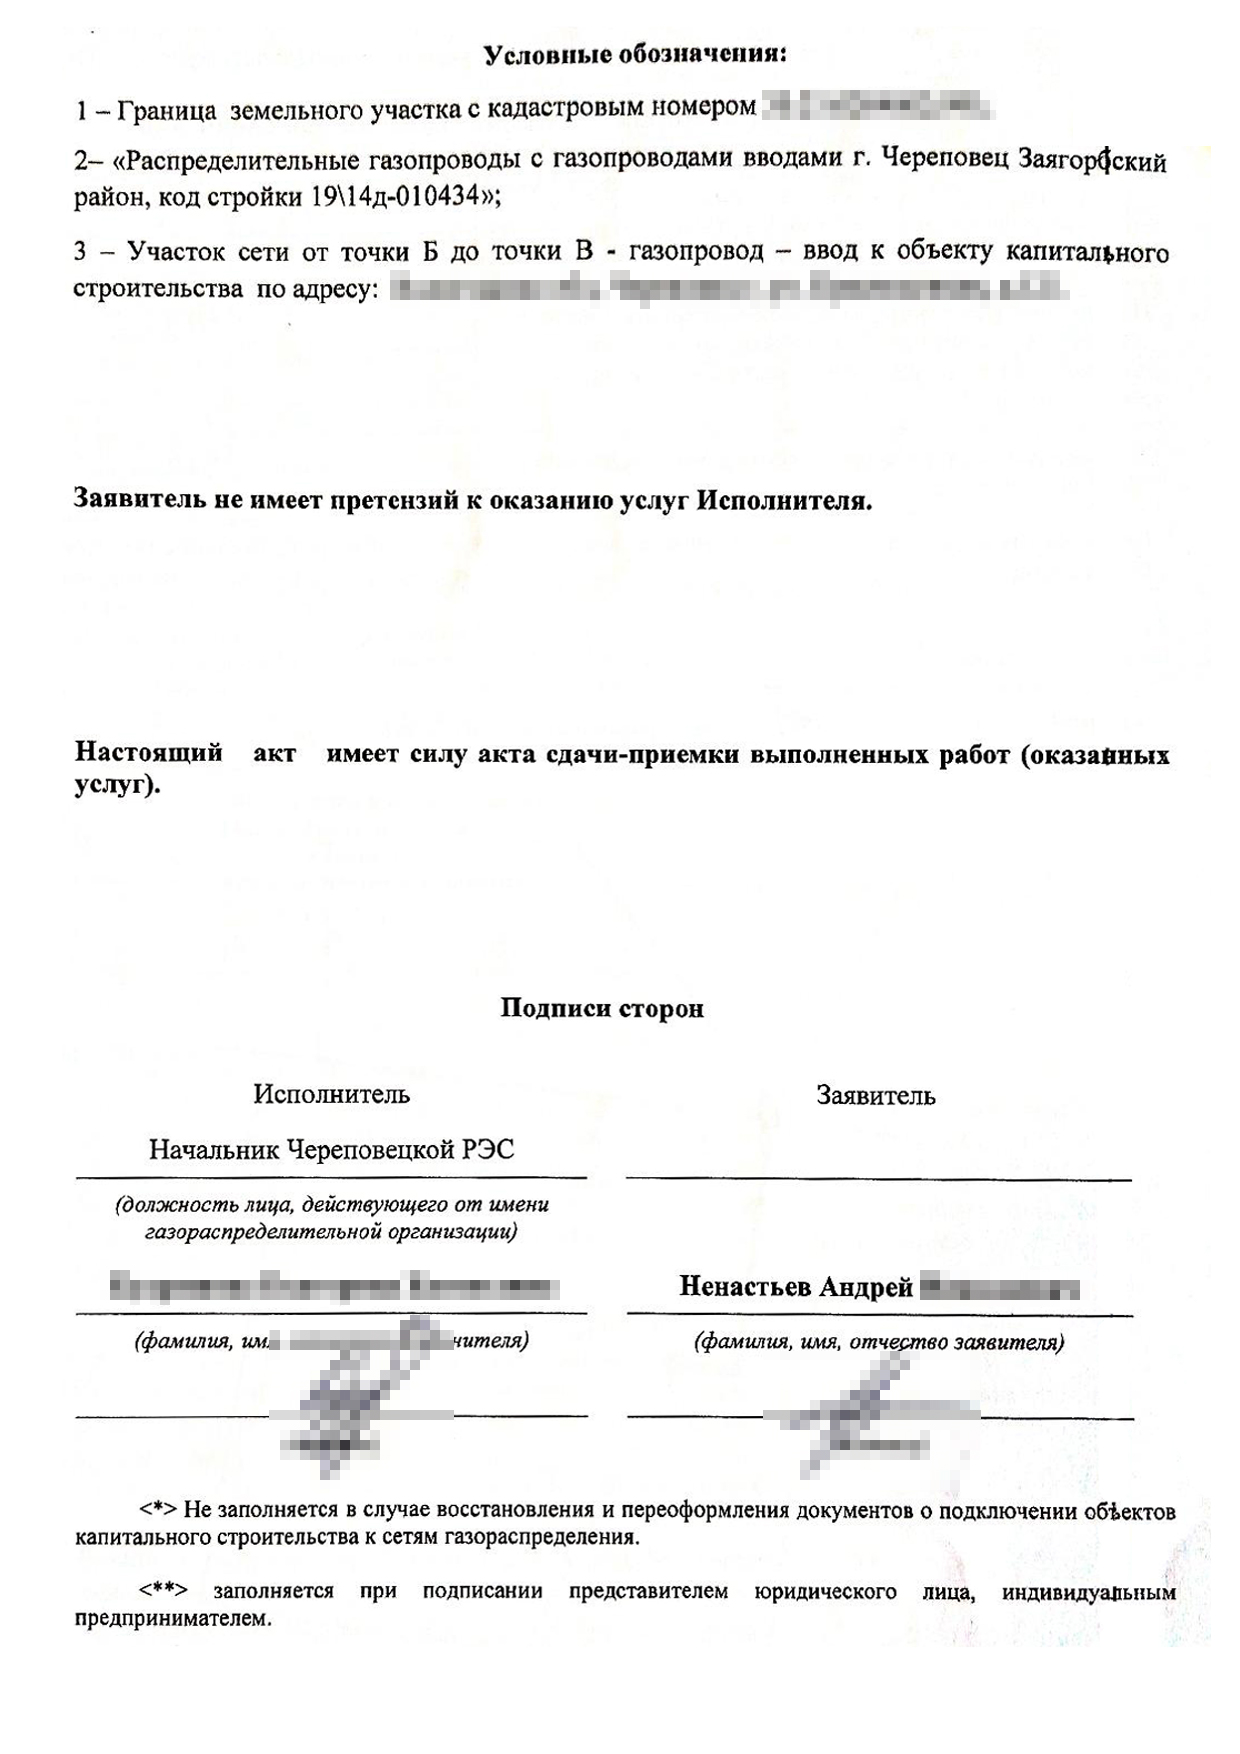 Такой акт я подписал с представителем «Газпрома» после подключения